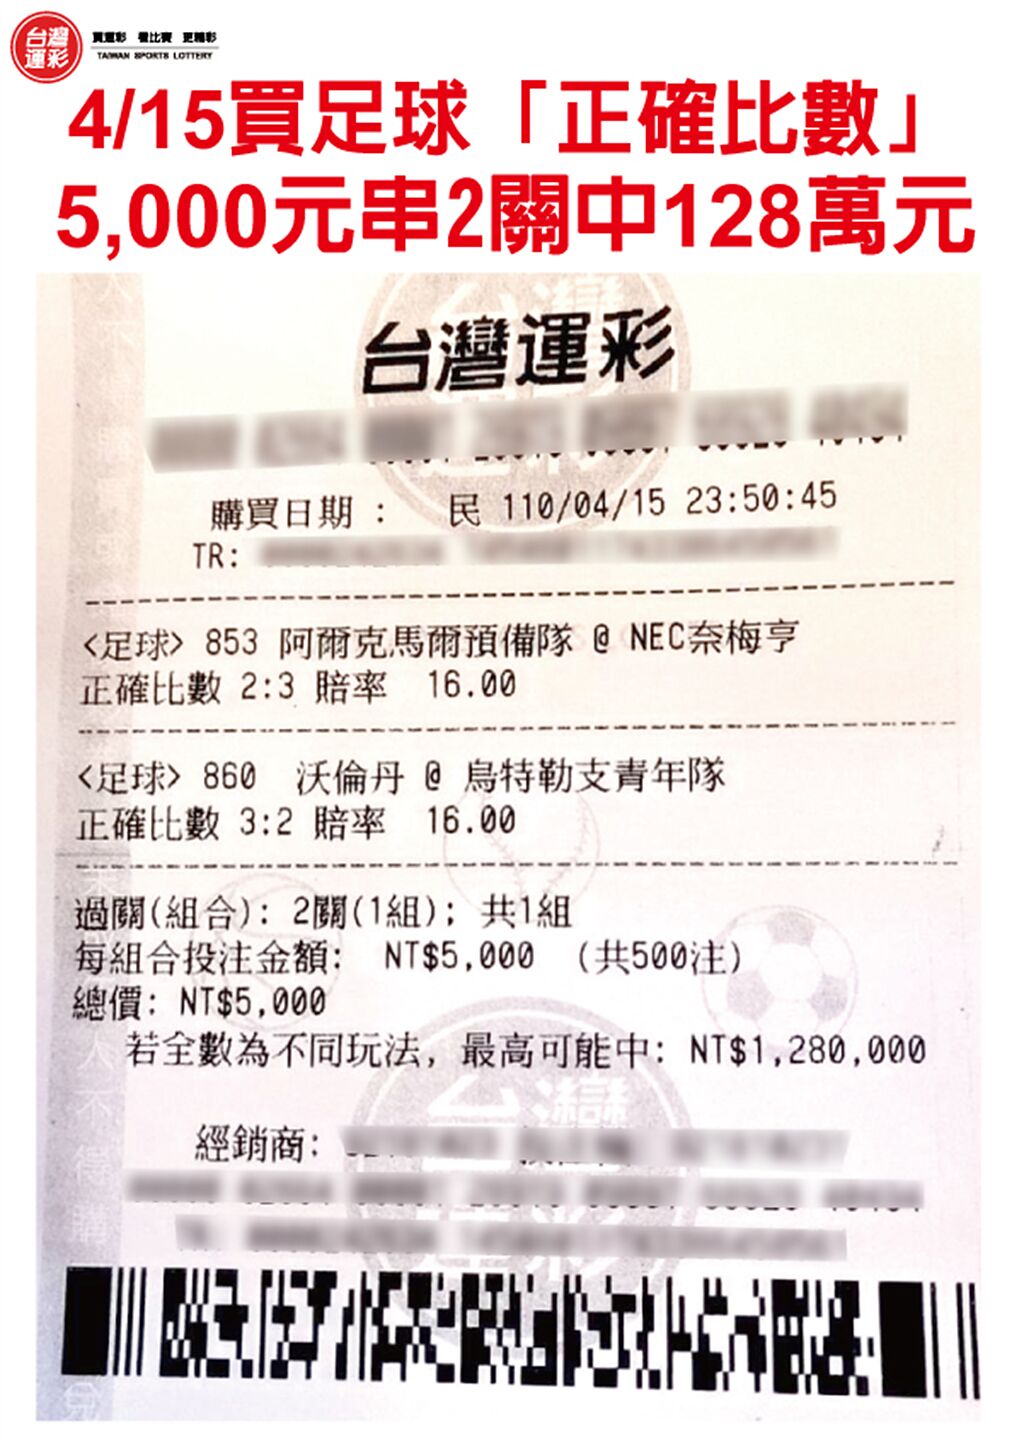 4月15日5000元串2關抱回128萬元彩券。(台灣運彩提供)